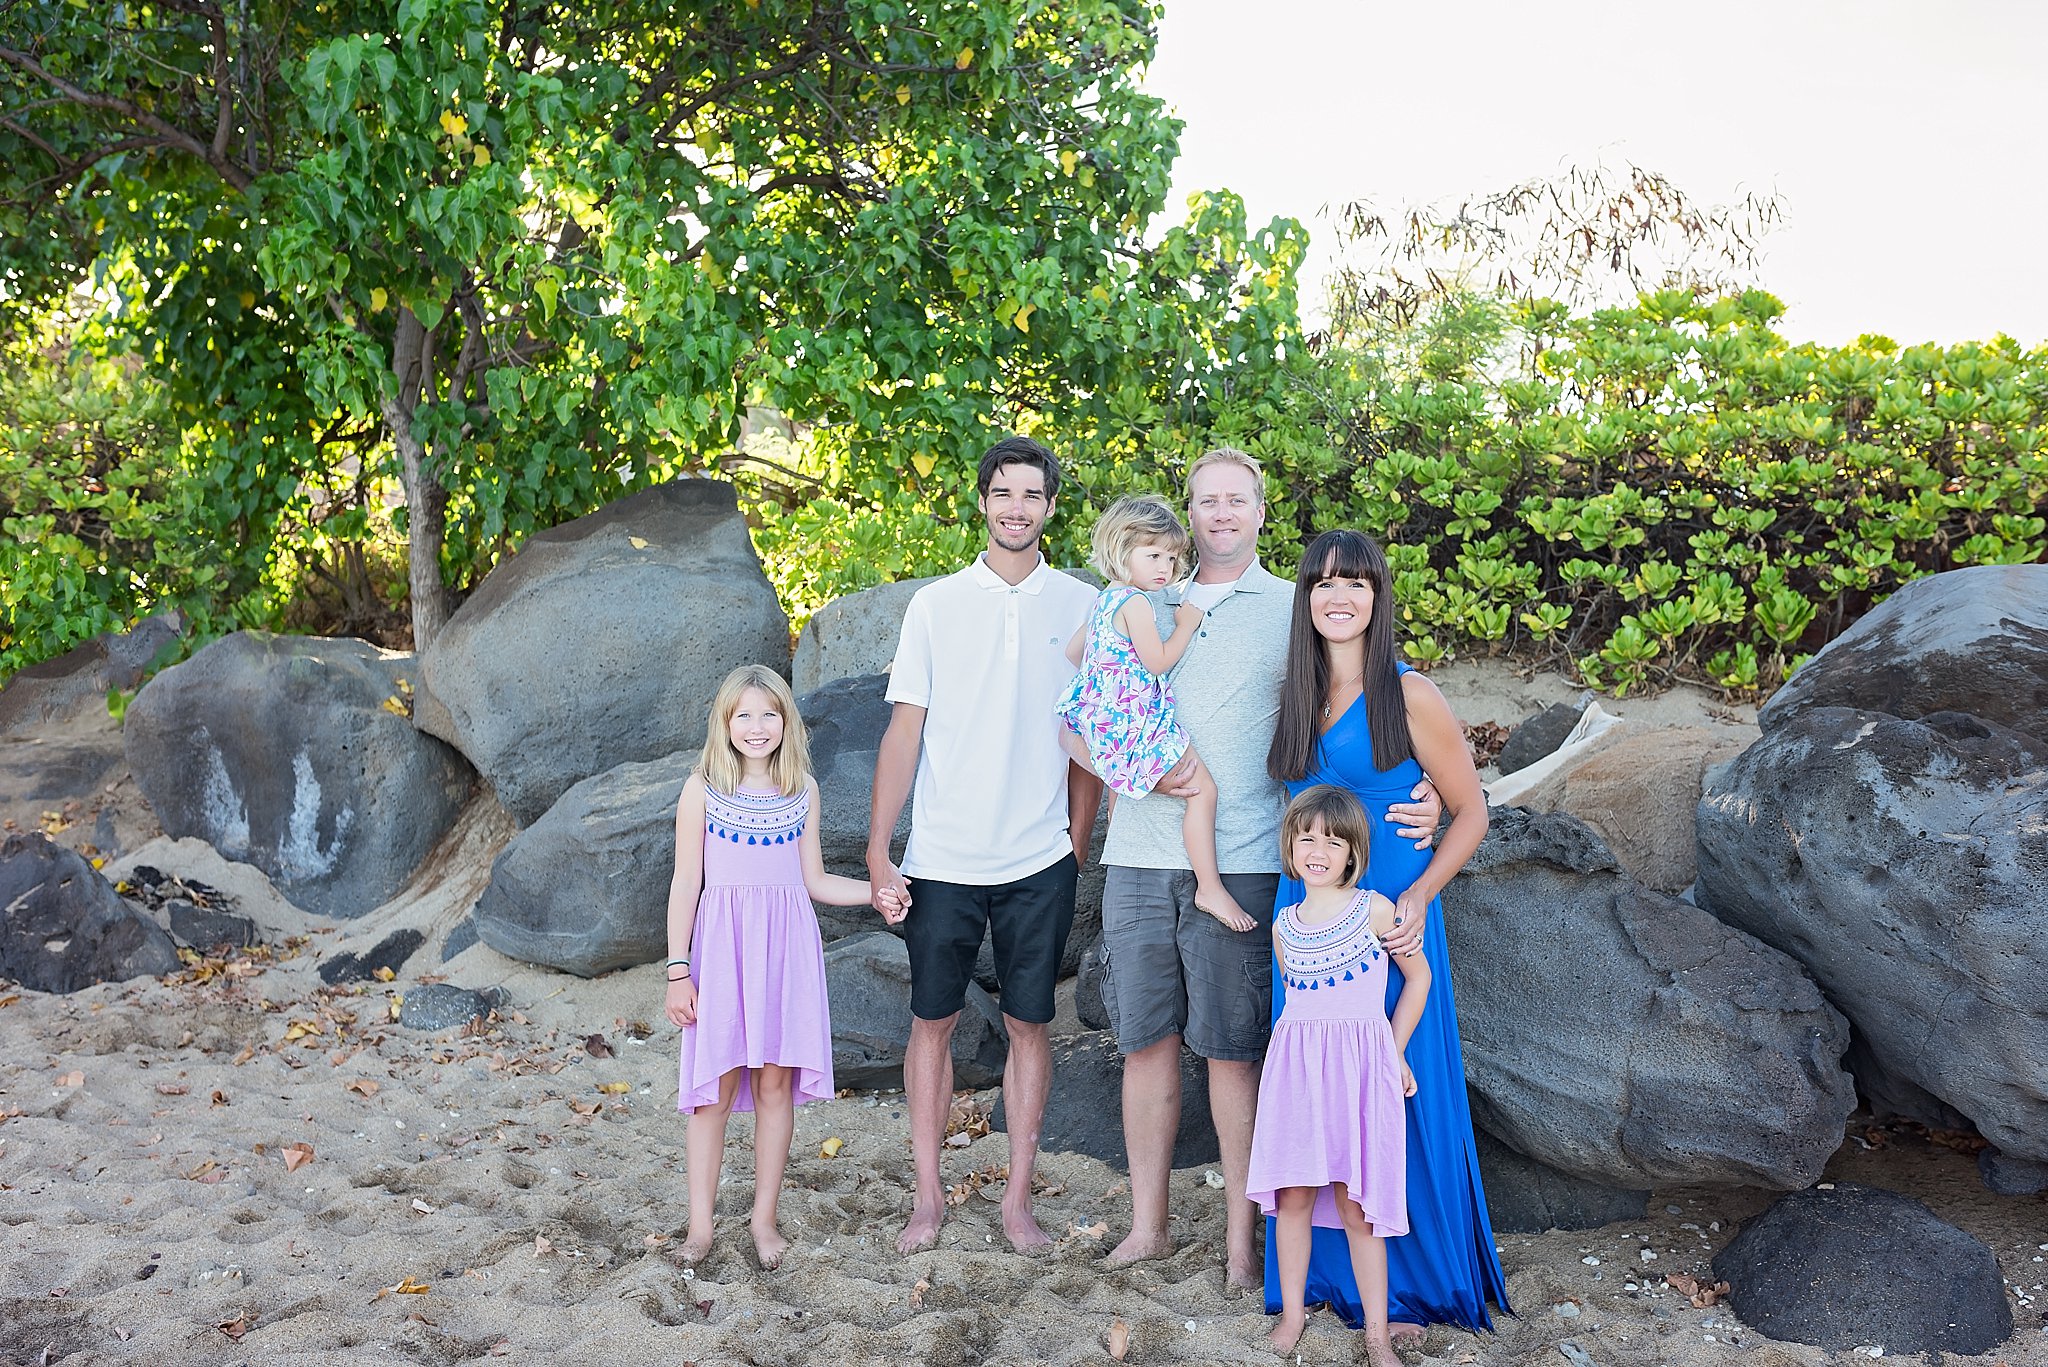 Maui Family Photography, Maui Family Photographer, Maui Photographers, Maui best photographer, best maui photographer, Maui Family Portraits